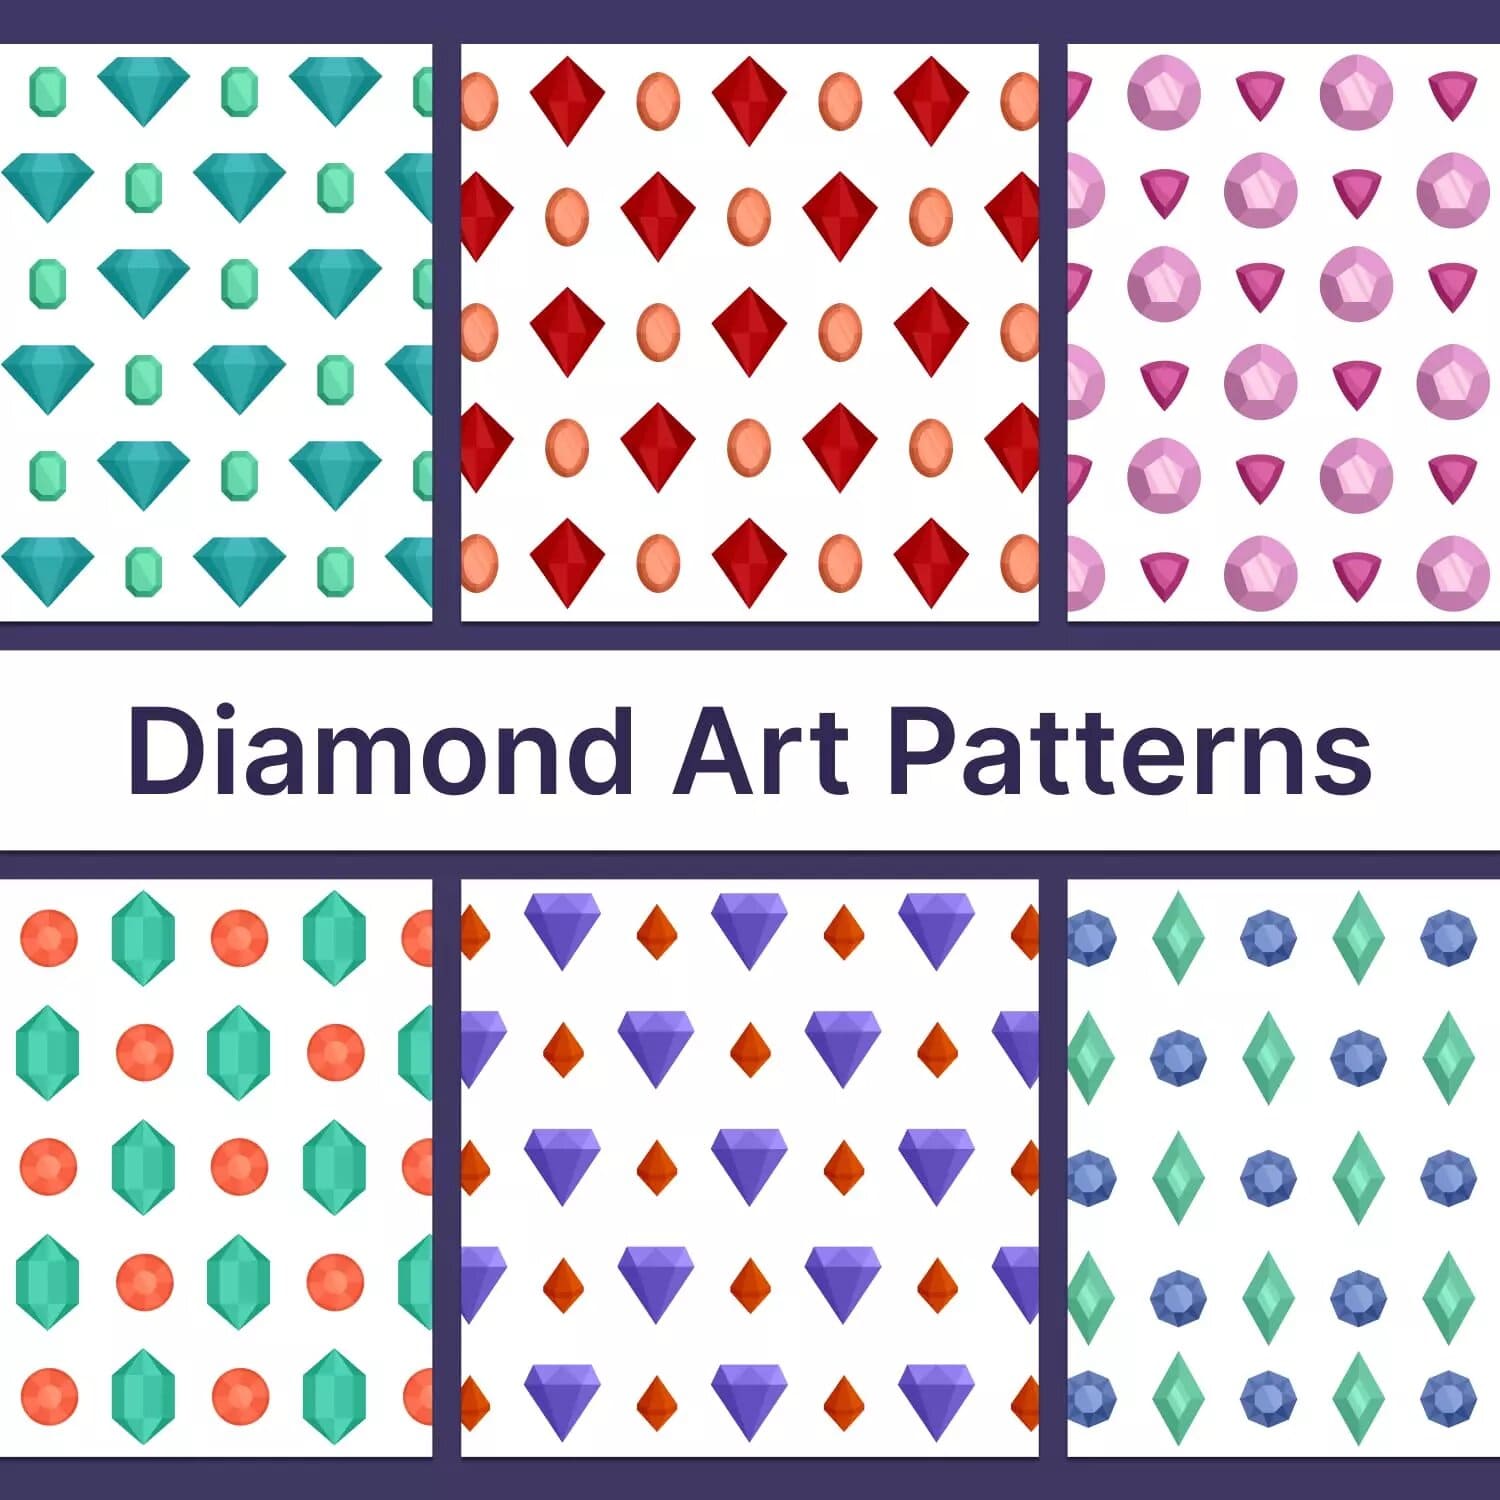 Diamond Art Patterns Preview 5.